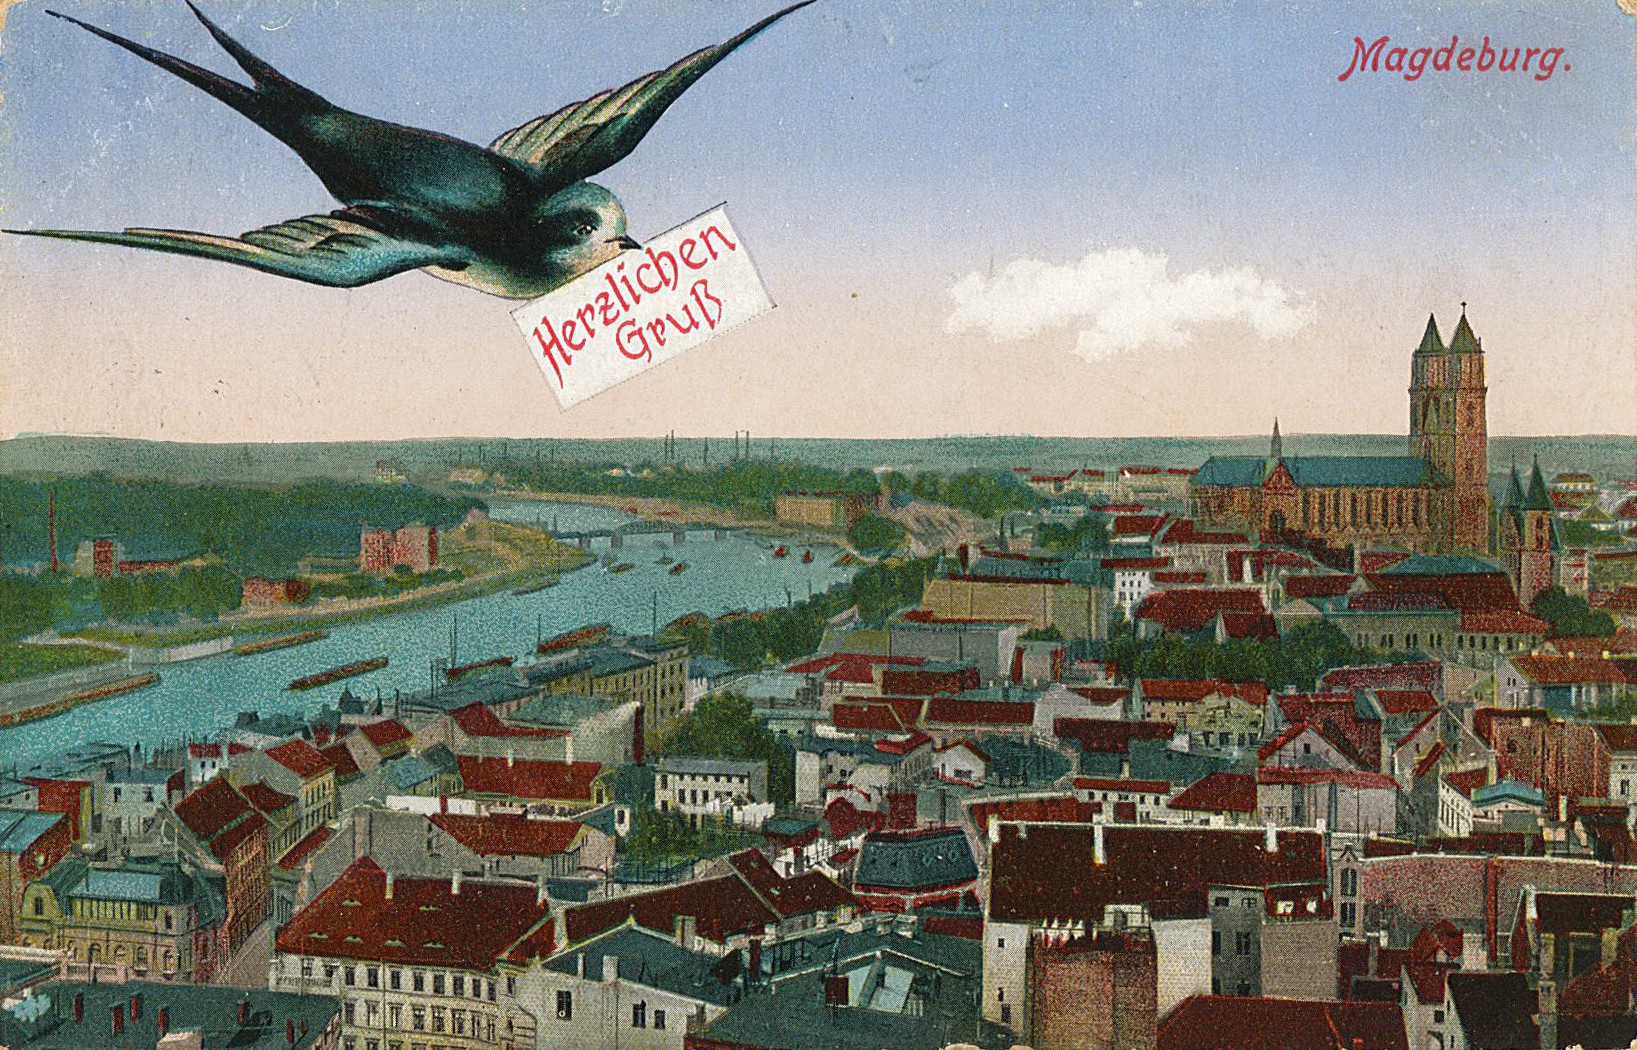 Postkarte von Erich Otto an seinen Vater Hermann Otto, 07.04.1915 (Museum Wolmirstedt RR-F)